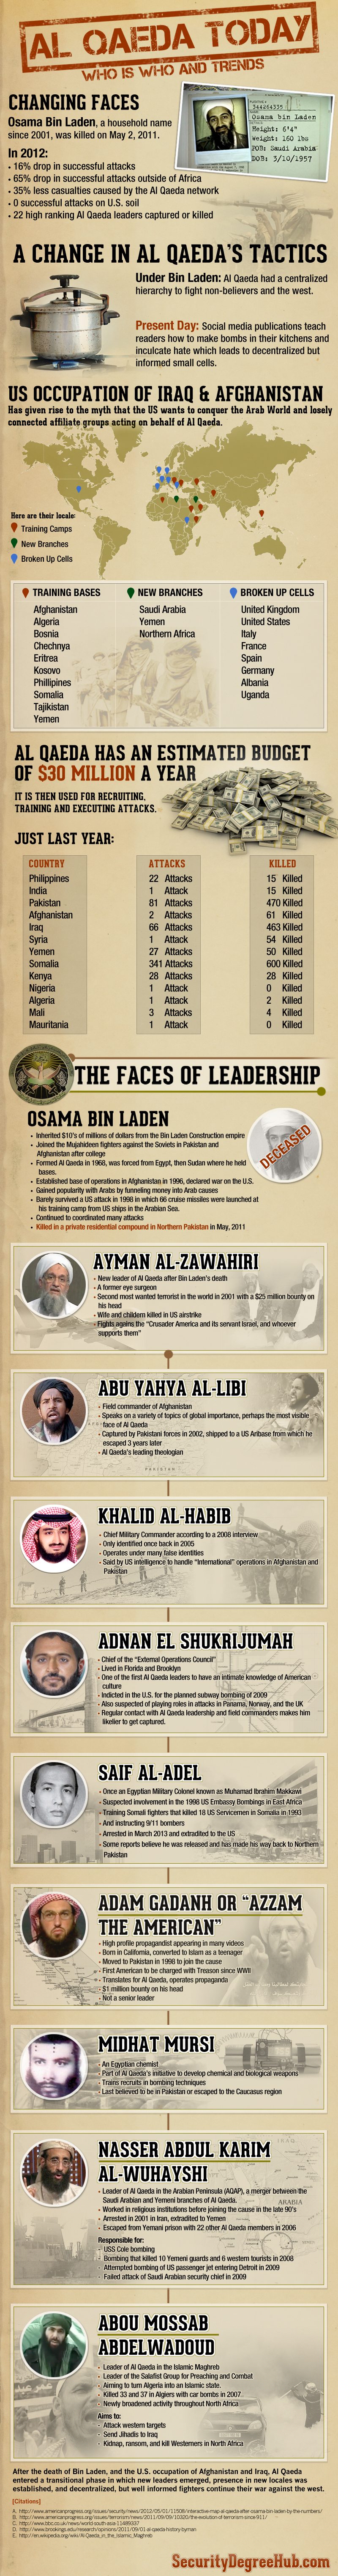 The Faces of Al Qaeda